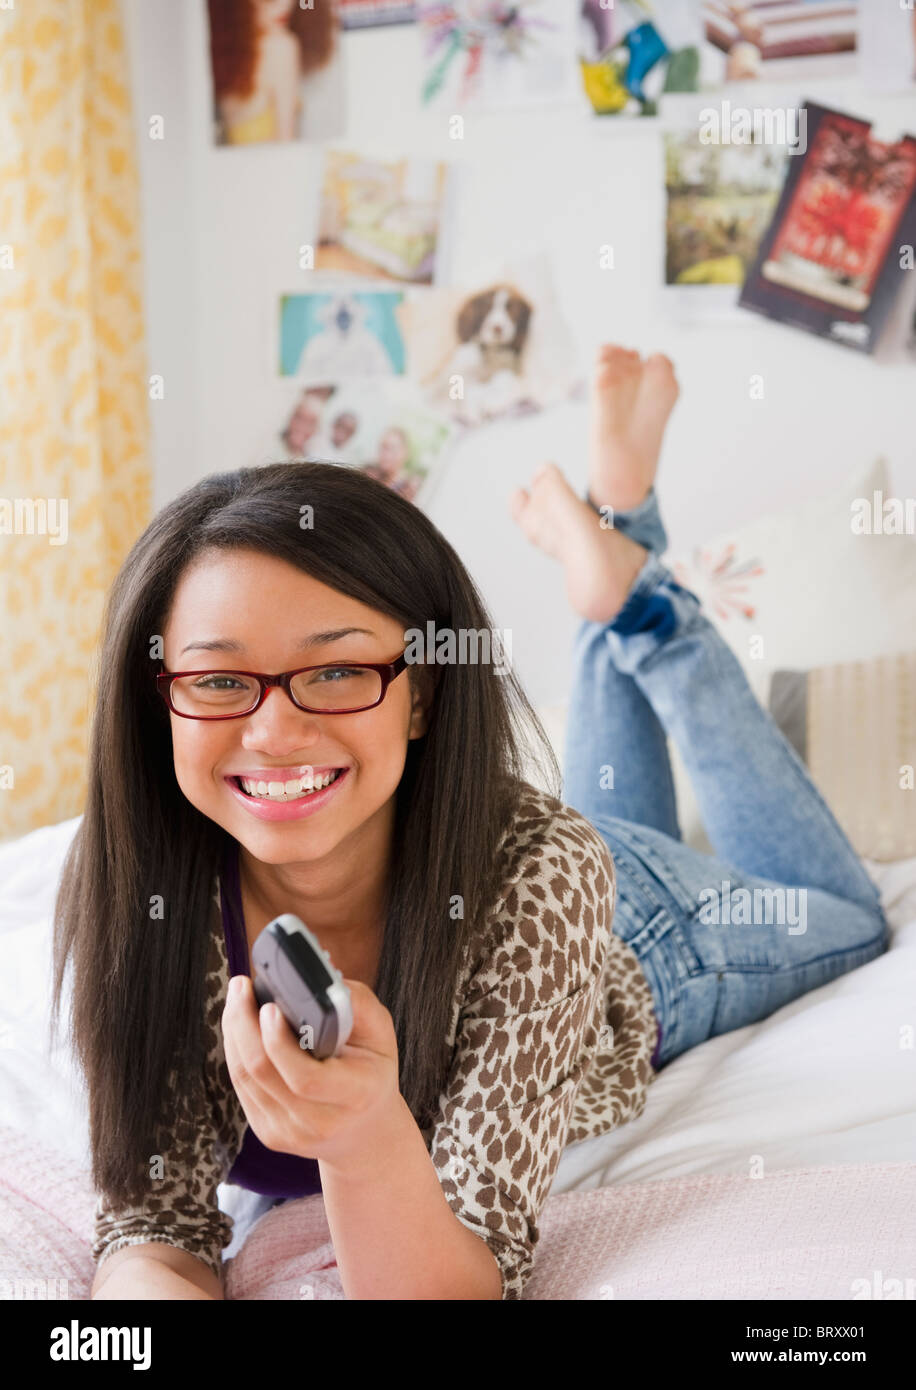 Razza mista ragazza adolescente tenendo premuto il controllo remoto e la posa sul letto Foto Stock